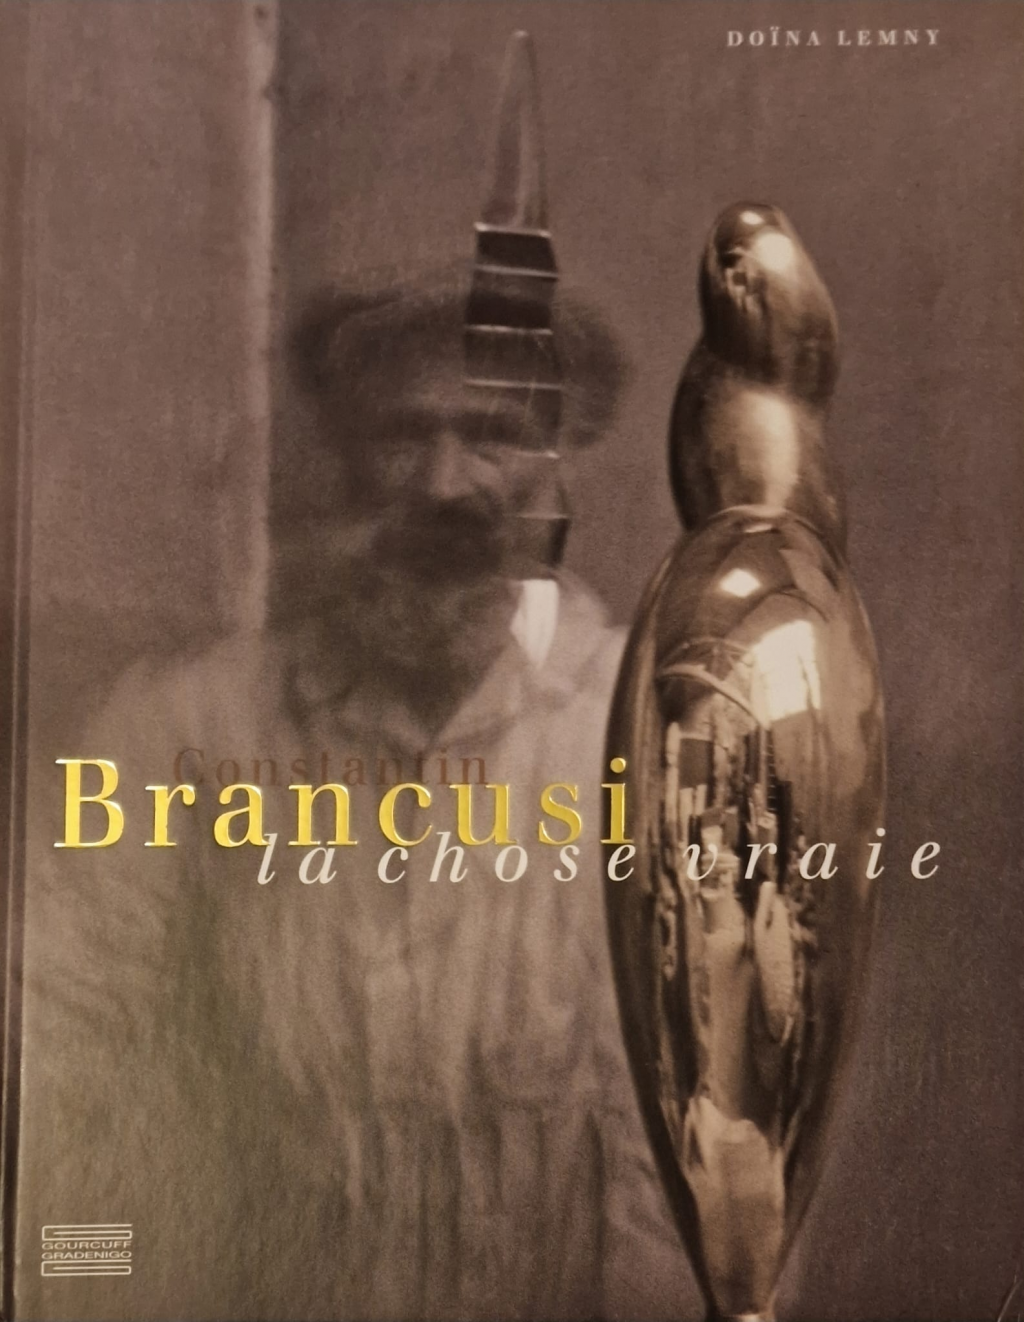 Volumele „Brancusi, la chose vraie” și „Brancusi et ses muses”, lansate în cadrul unei conferințe susținute de Doina Lemny, la Bruxelles